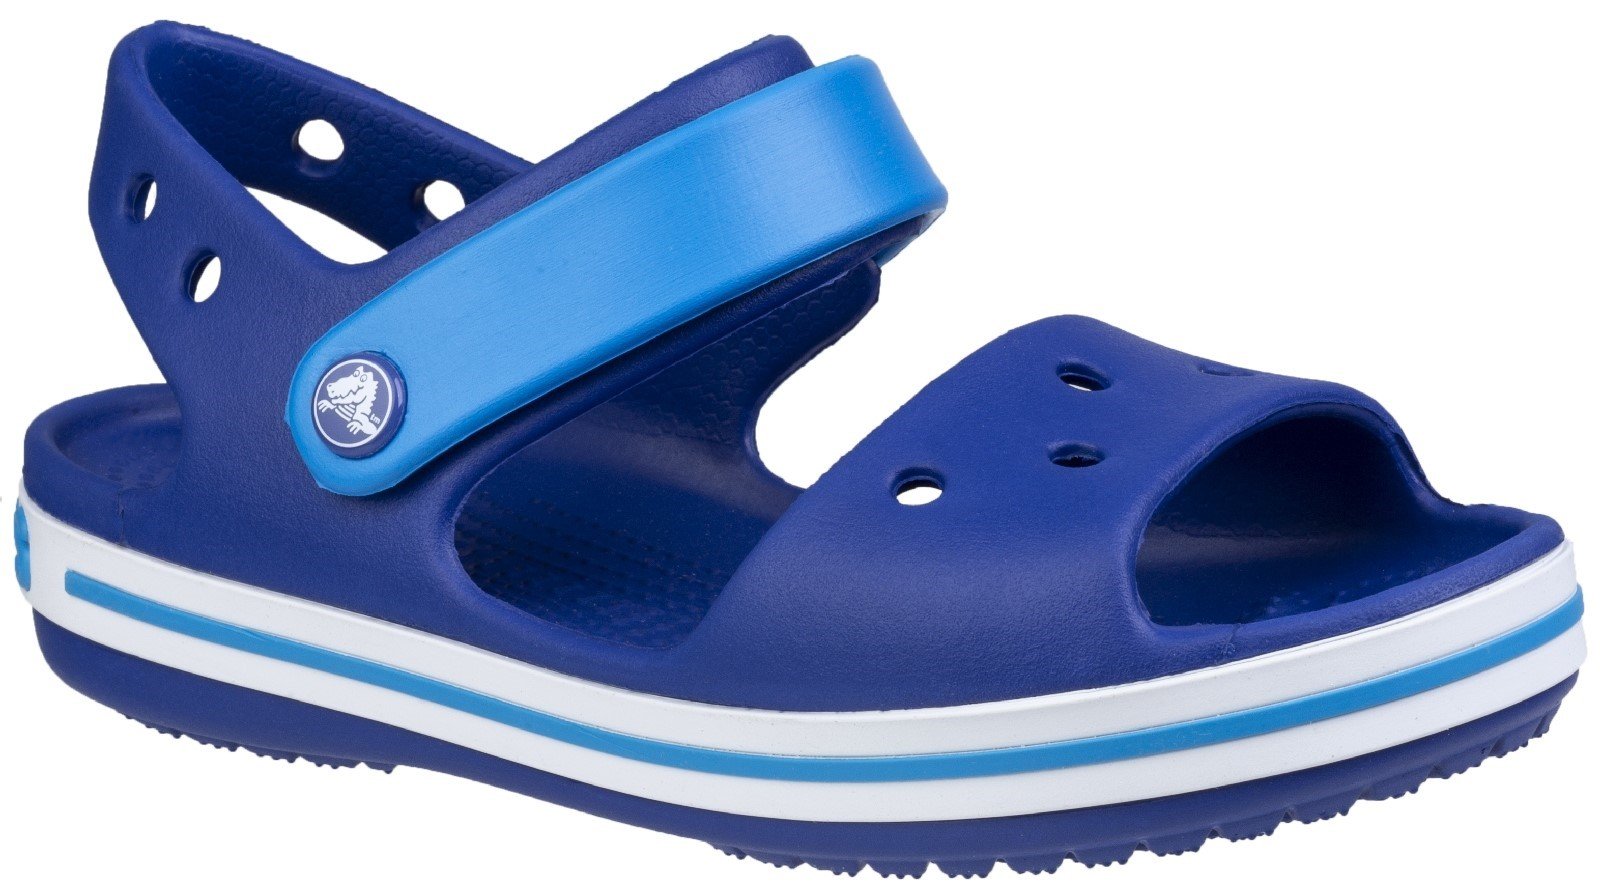 Crocs Kid's Sandal Various Colours 21077 - Dark Blue/Light Blue/White 10